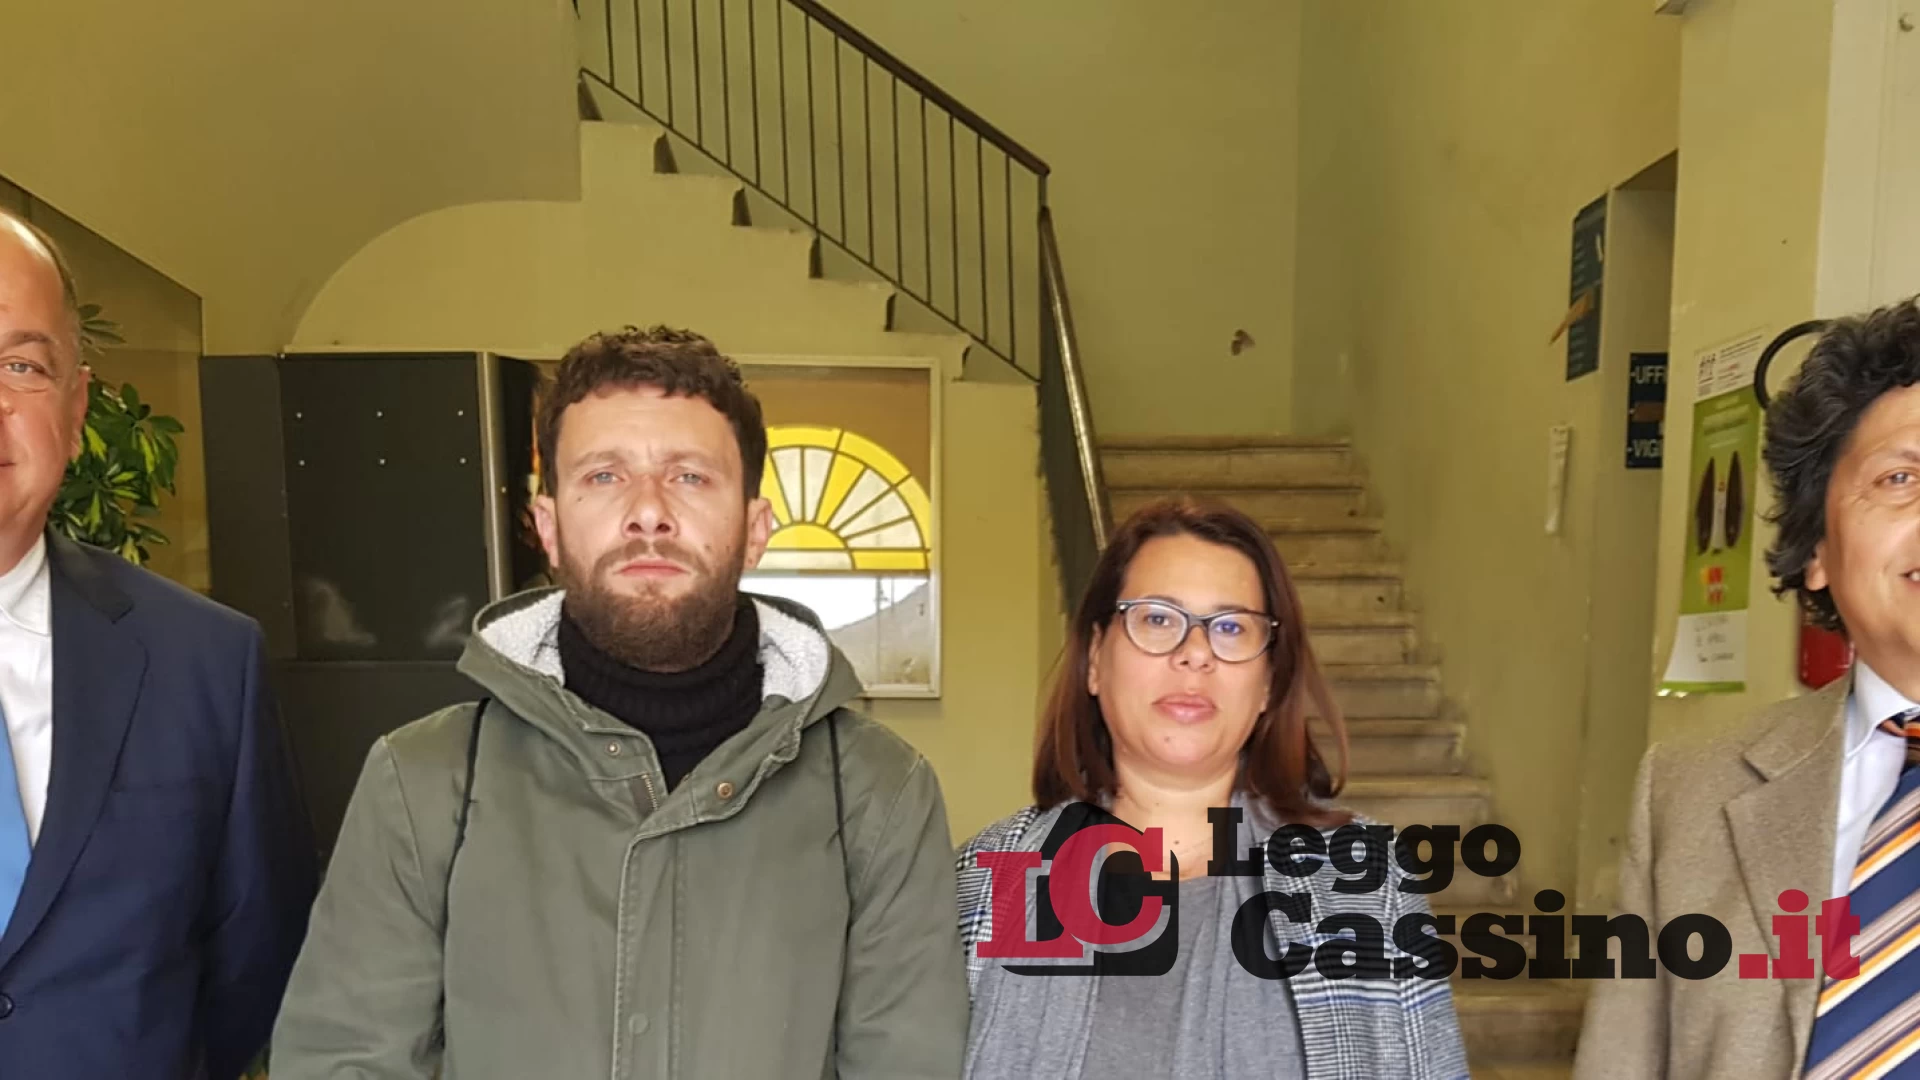 Bagarre a Cervaro: fendenti in Aula sul caso degli appalti